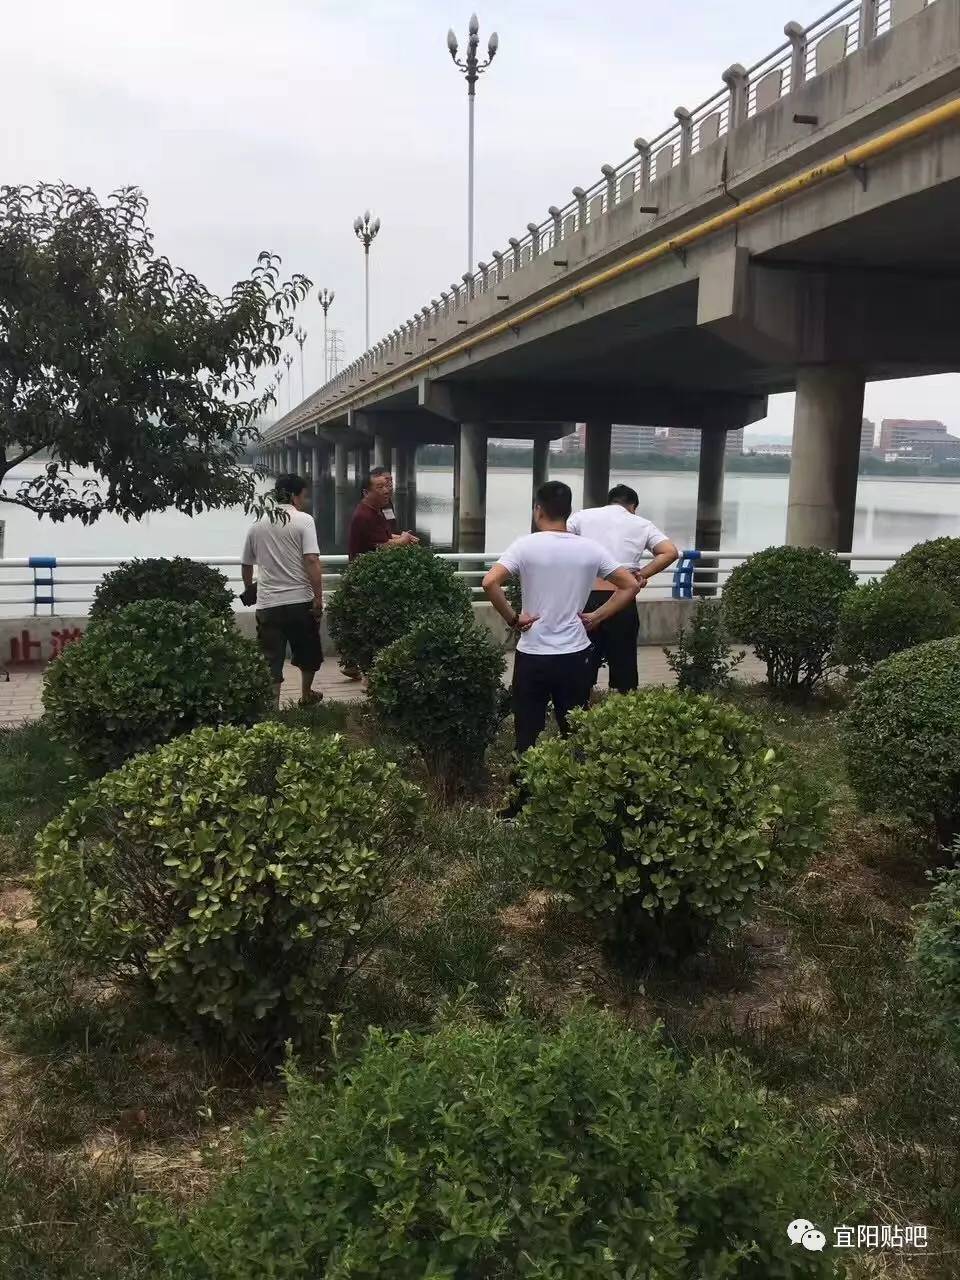 【珍爱生命】宜阳滨河公园再次发生溺水事故!